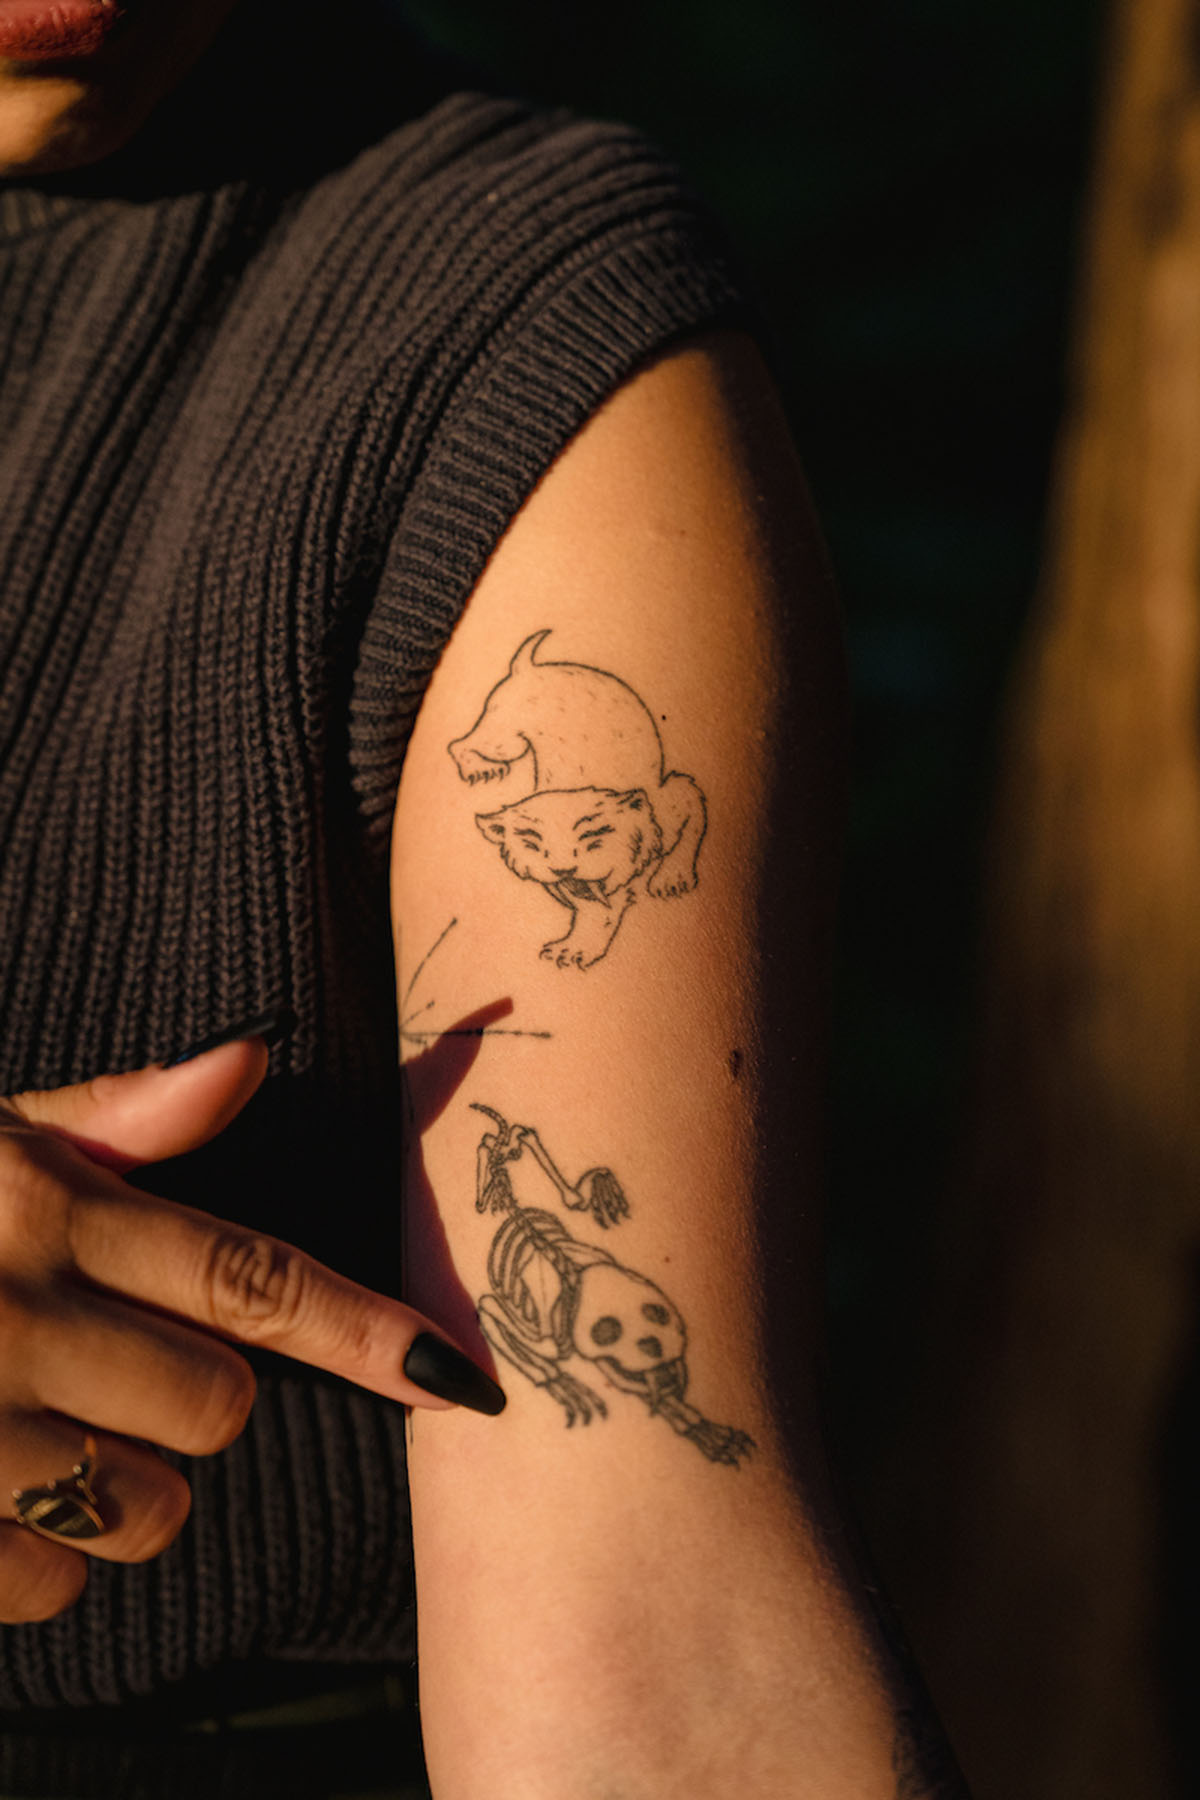 Michelle Barboza “MB” Ramirez shows off their smilodon tattoos.